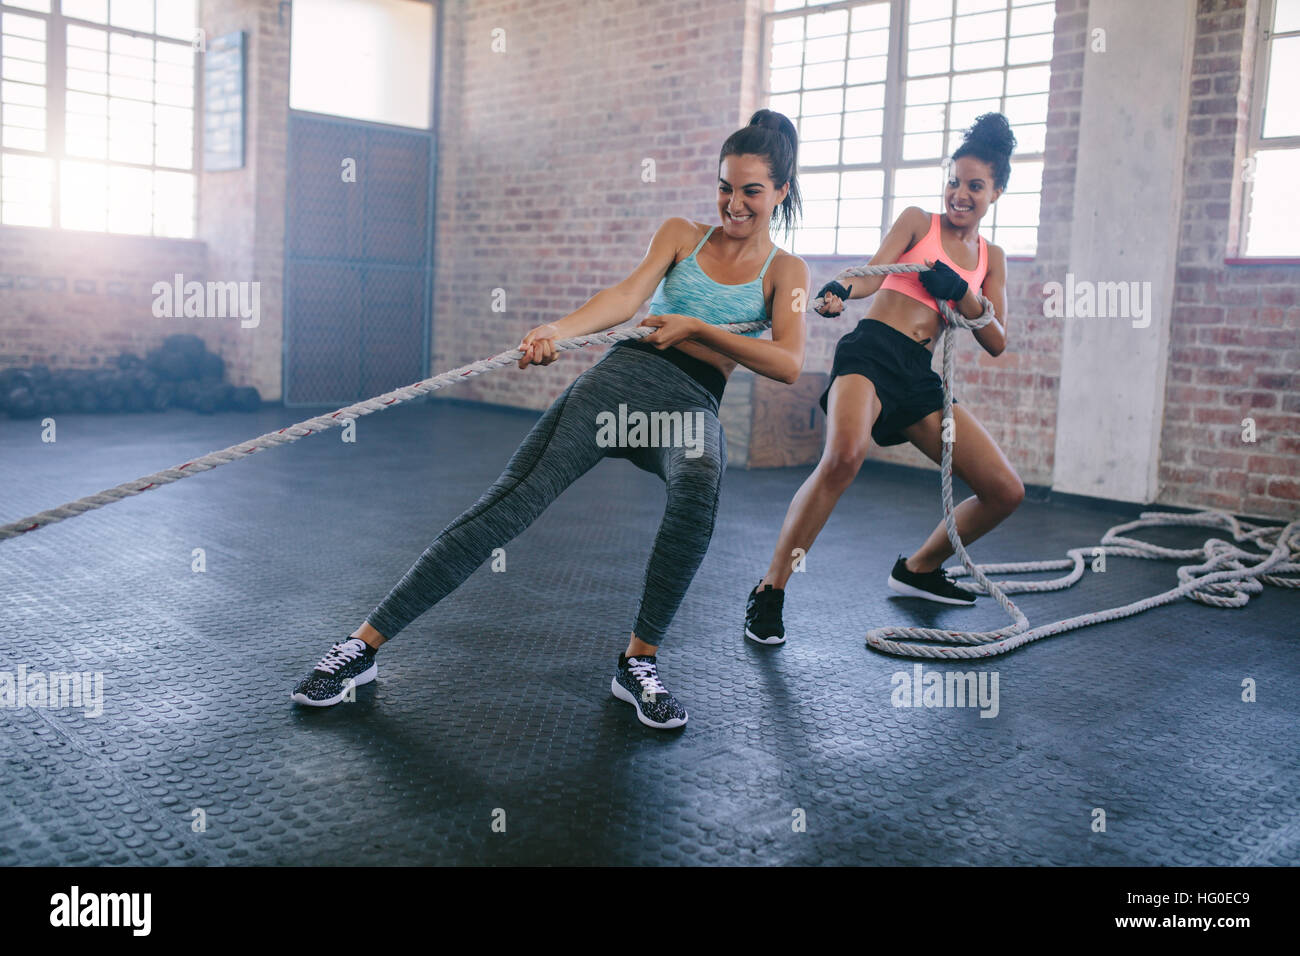 Schuss von zwei starken jungen Frauen, die Seilziehübungen in einem Fitnessstudio machen. Fitness-Frauen ziehen Seil im Fitnessstudio und lächeln. Stockfoto